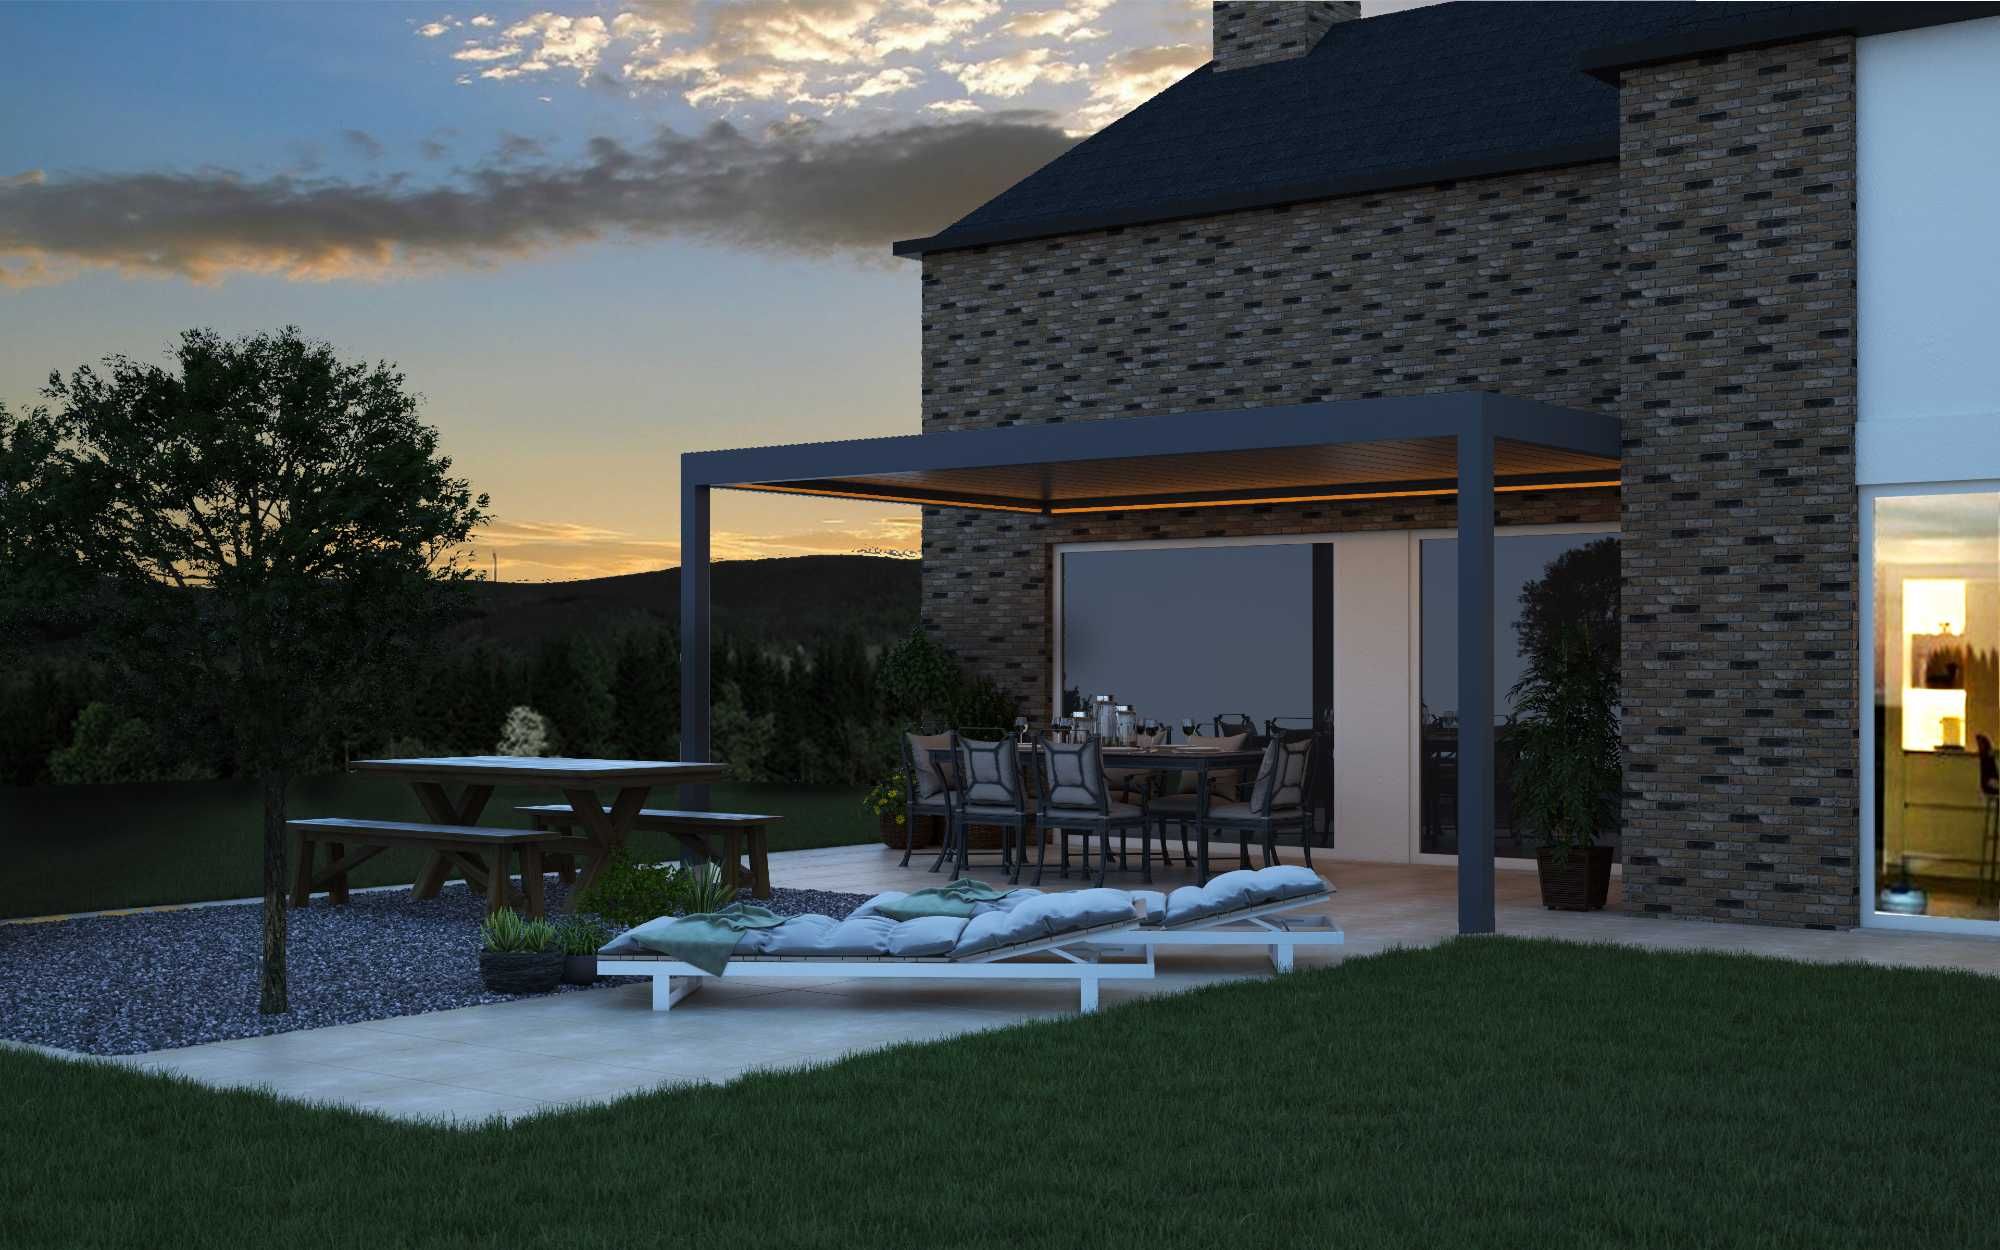 Zadaszenia aluminiowe lamelowe, ogród letni, patio żaluzje 3x3m